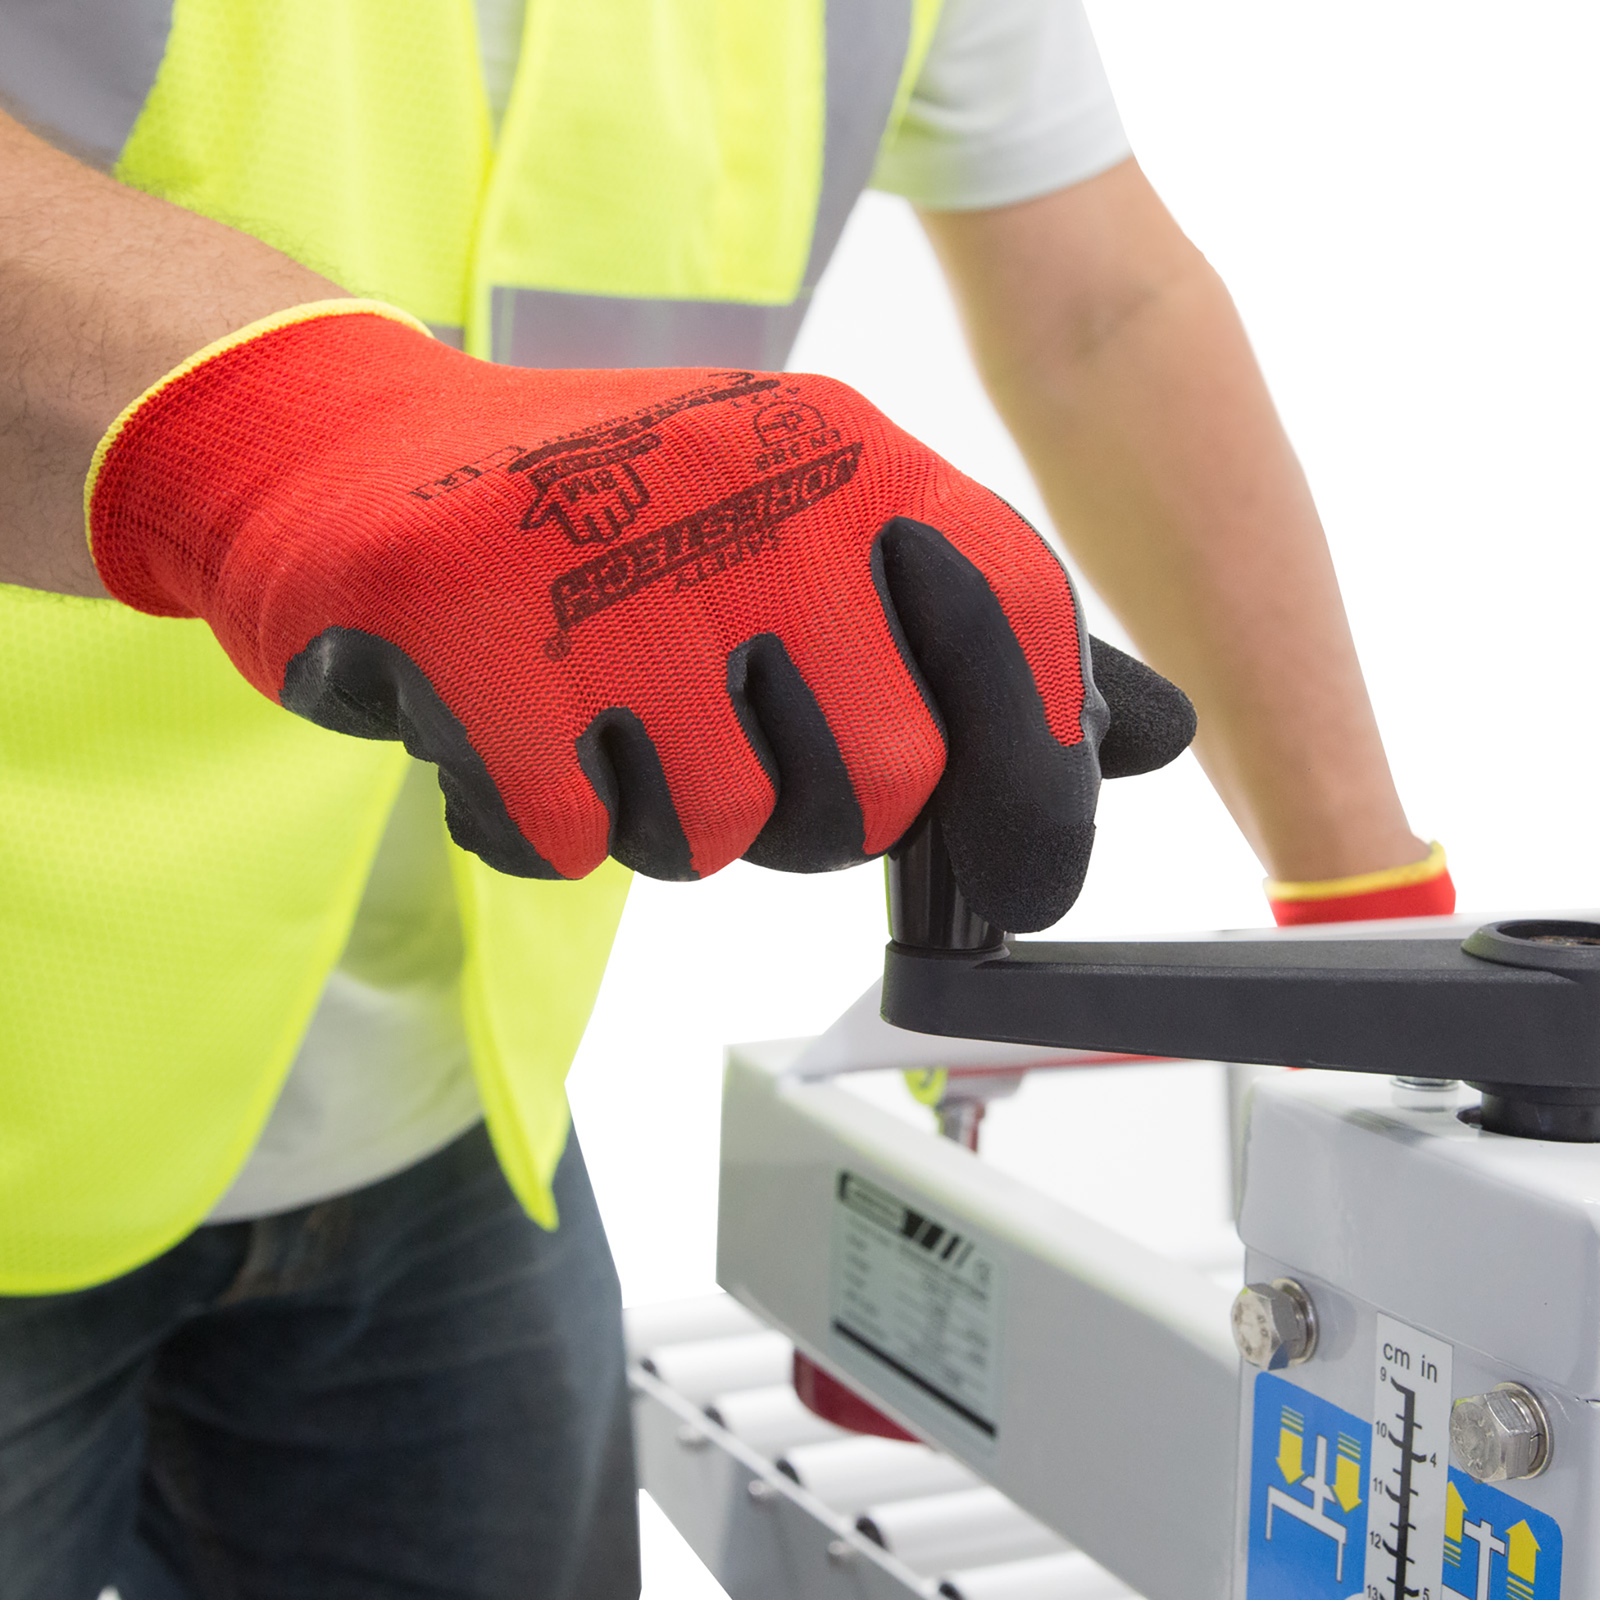 12-Pair Diesel Protection Pro-Tekk Latex Foam Grip Coated Work Gloves – RG  Safety